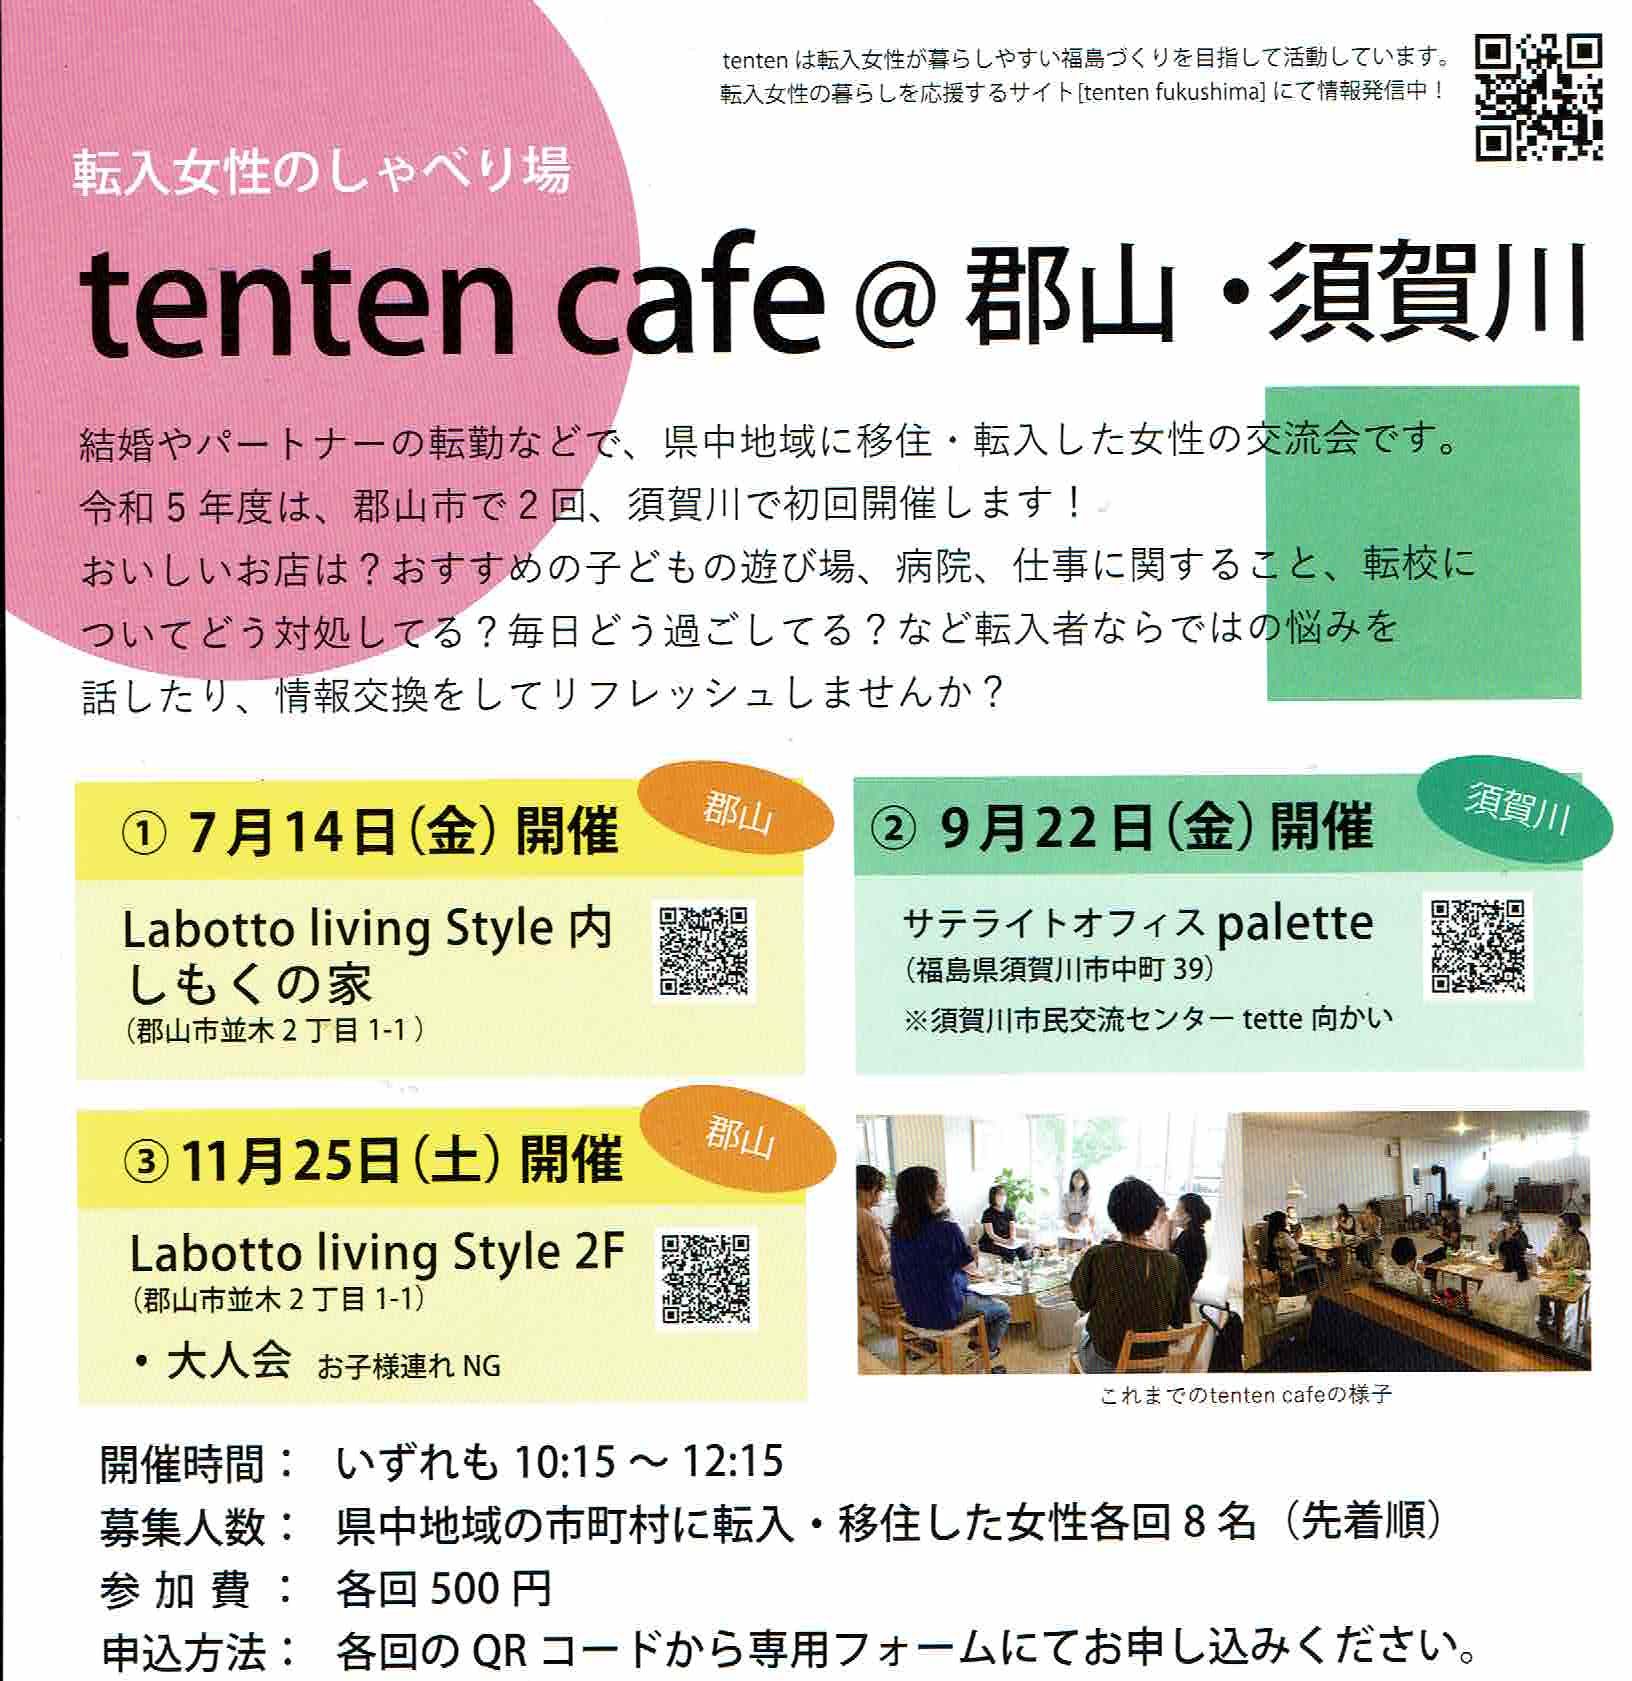 tenten cafe@郡山〈11月25日(土)〉開催